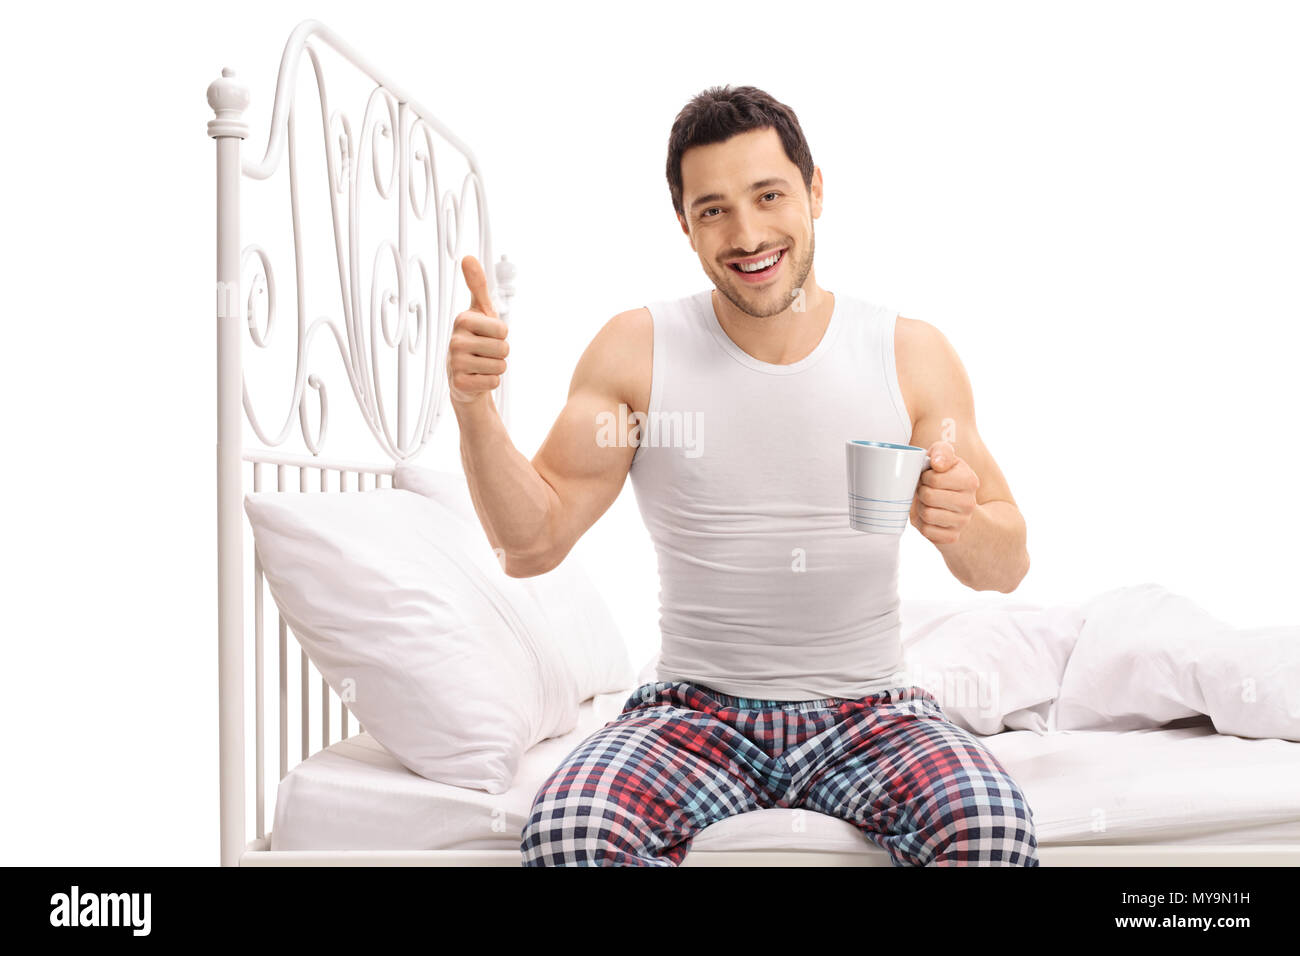 Lächelnden jungen Mann mit einer Schale sitzt auf einem Bett und ein "Daumen hoch" Geste auf weißem Hintergrund Stockfoto